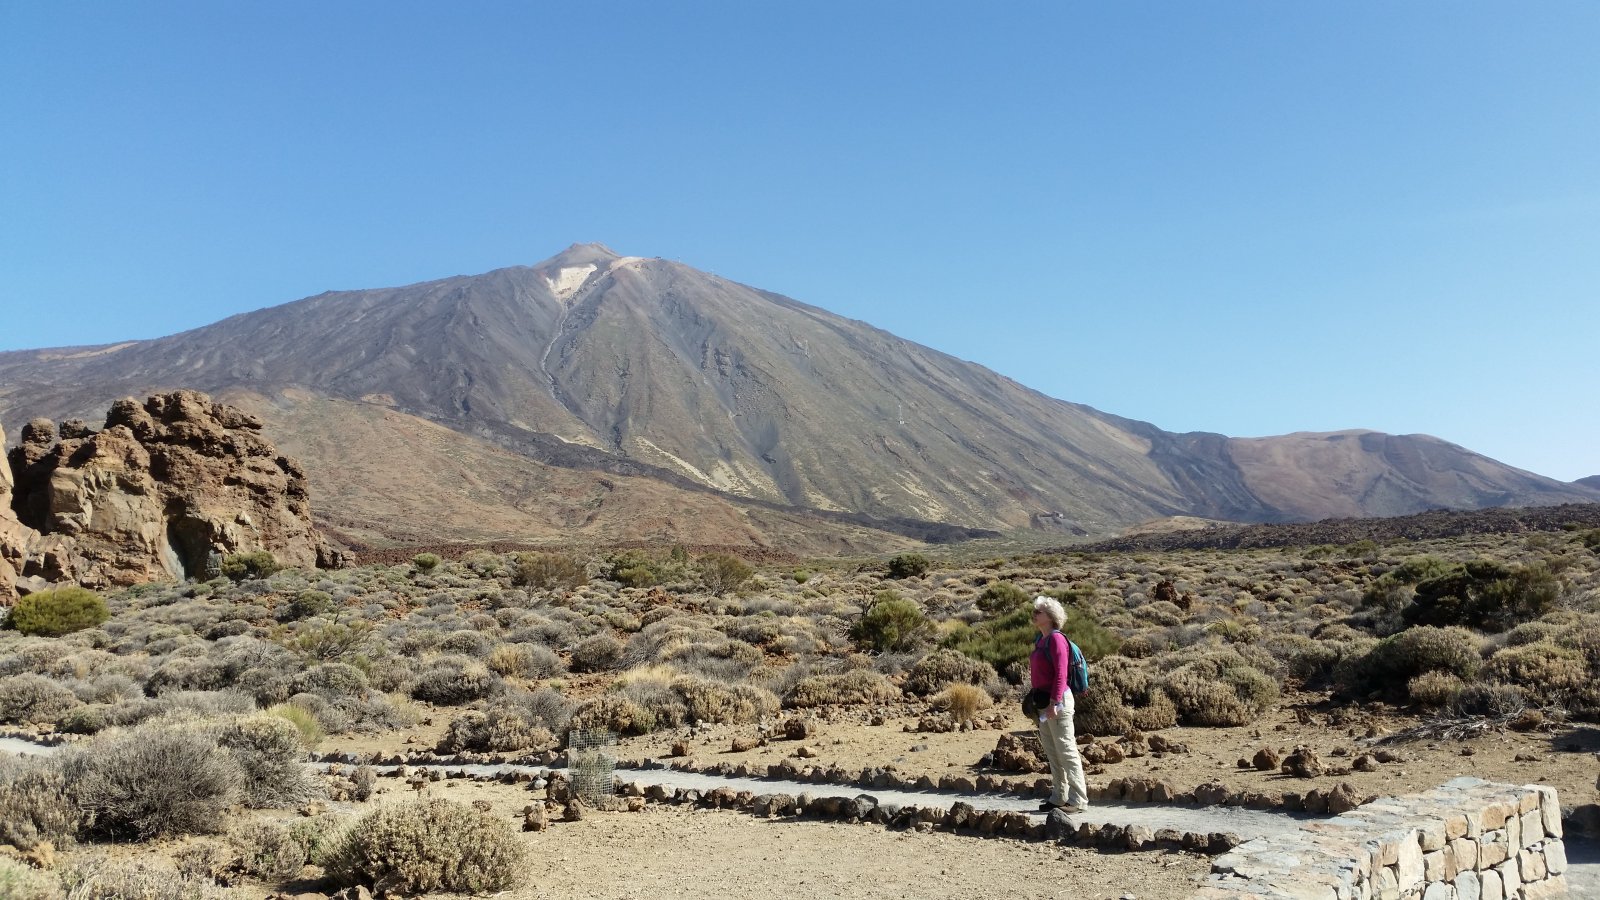 Wandeling op de lavavlakten van El Teide